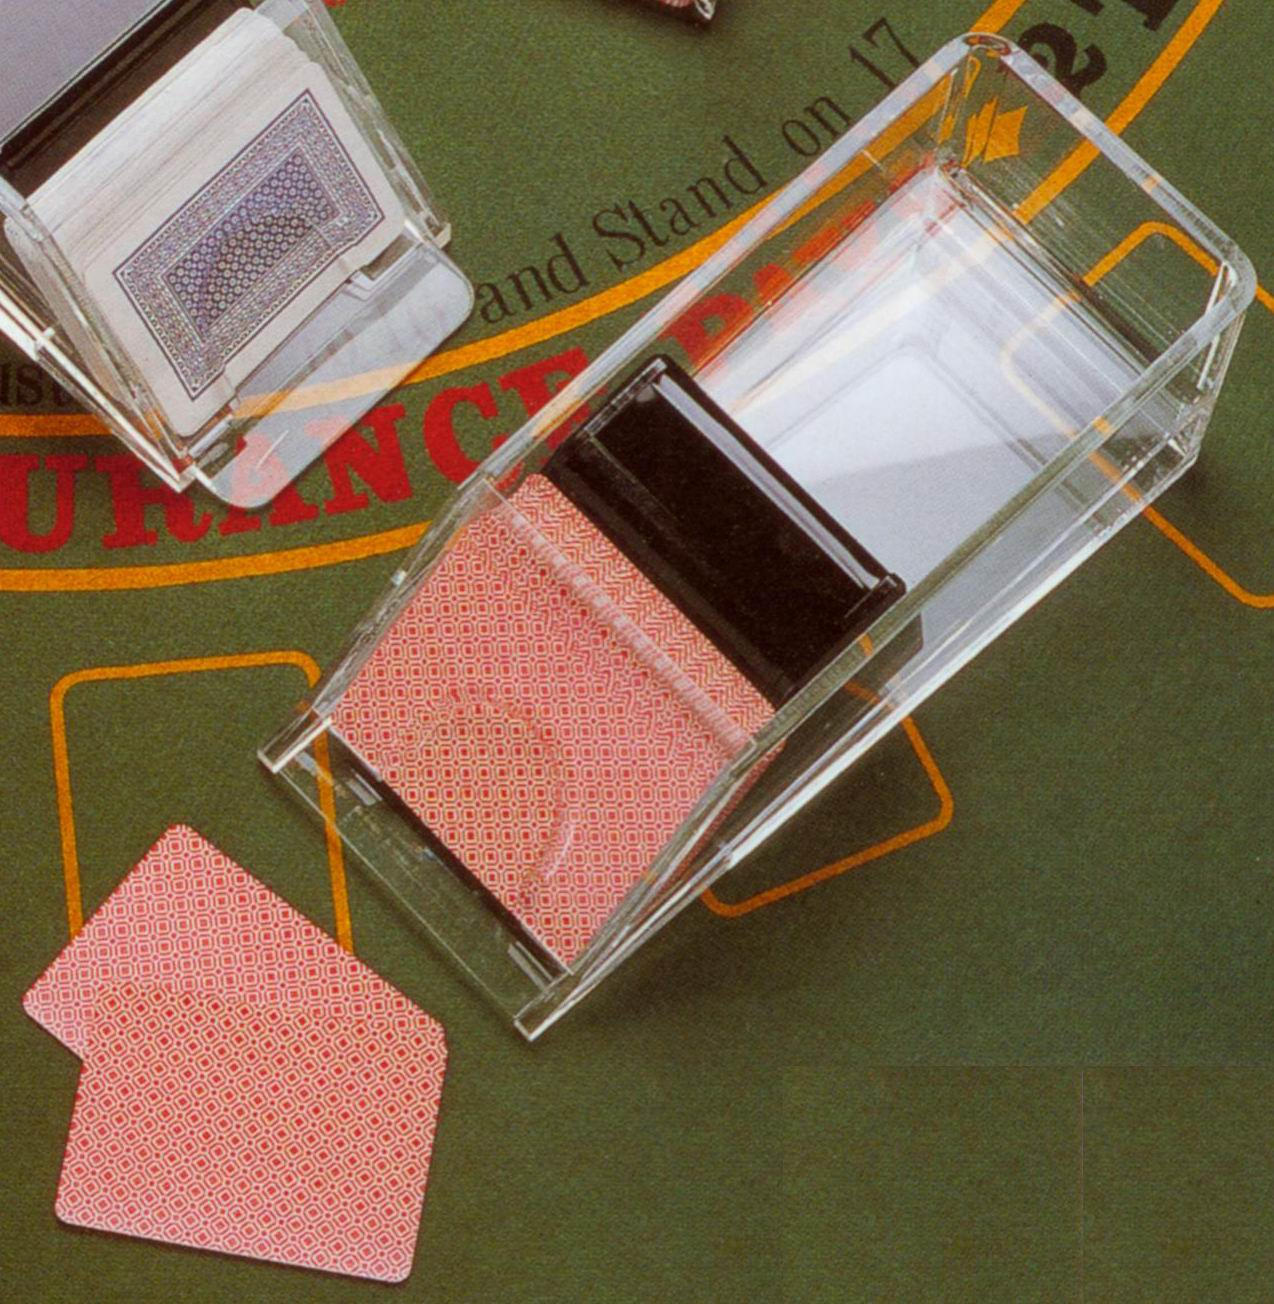 Acryl-Händler Schuh für 4 / 6 Decks von Spielkarten (Acryl-Händler Schuh für 4 / 6 Decks von Spielkarten)